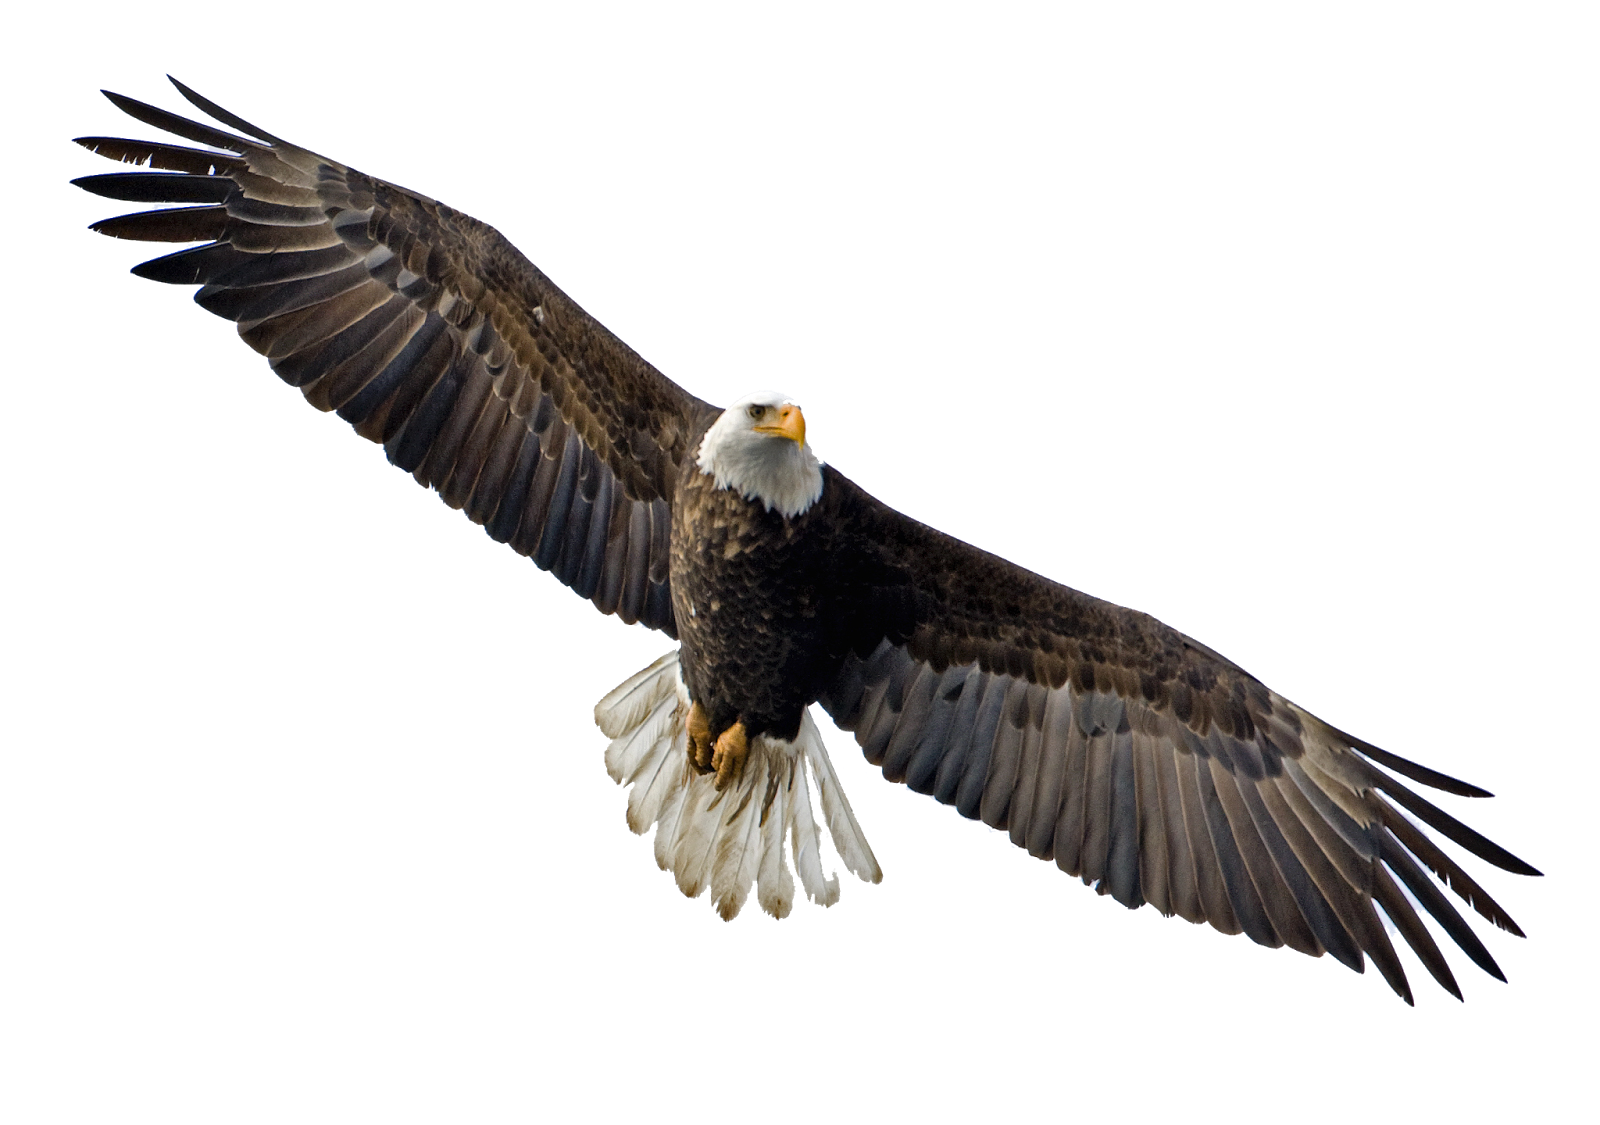 soaring eagle images